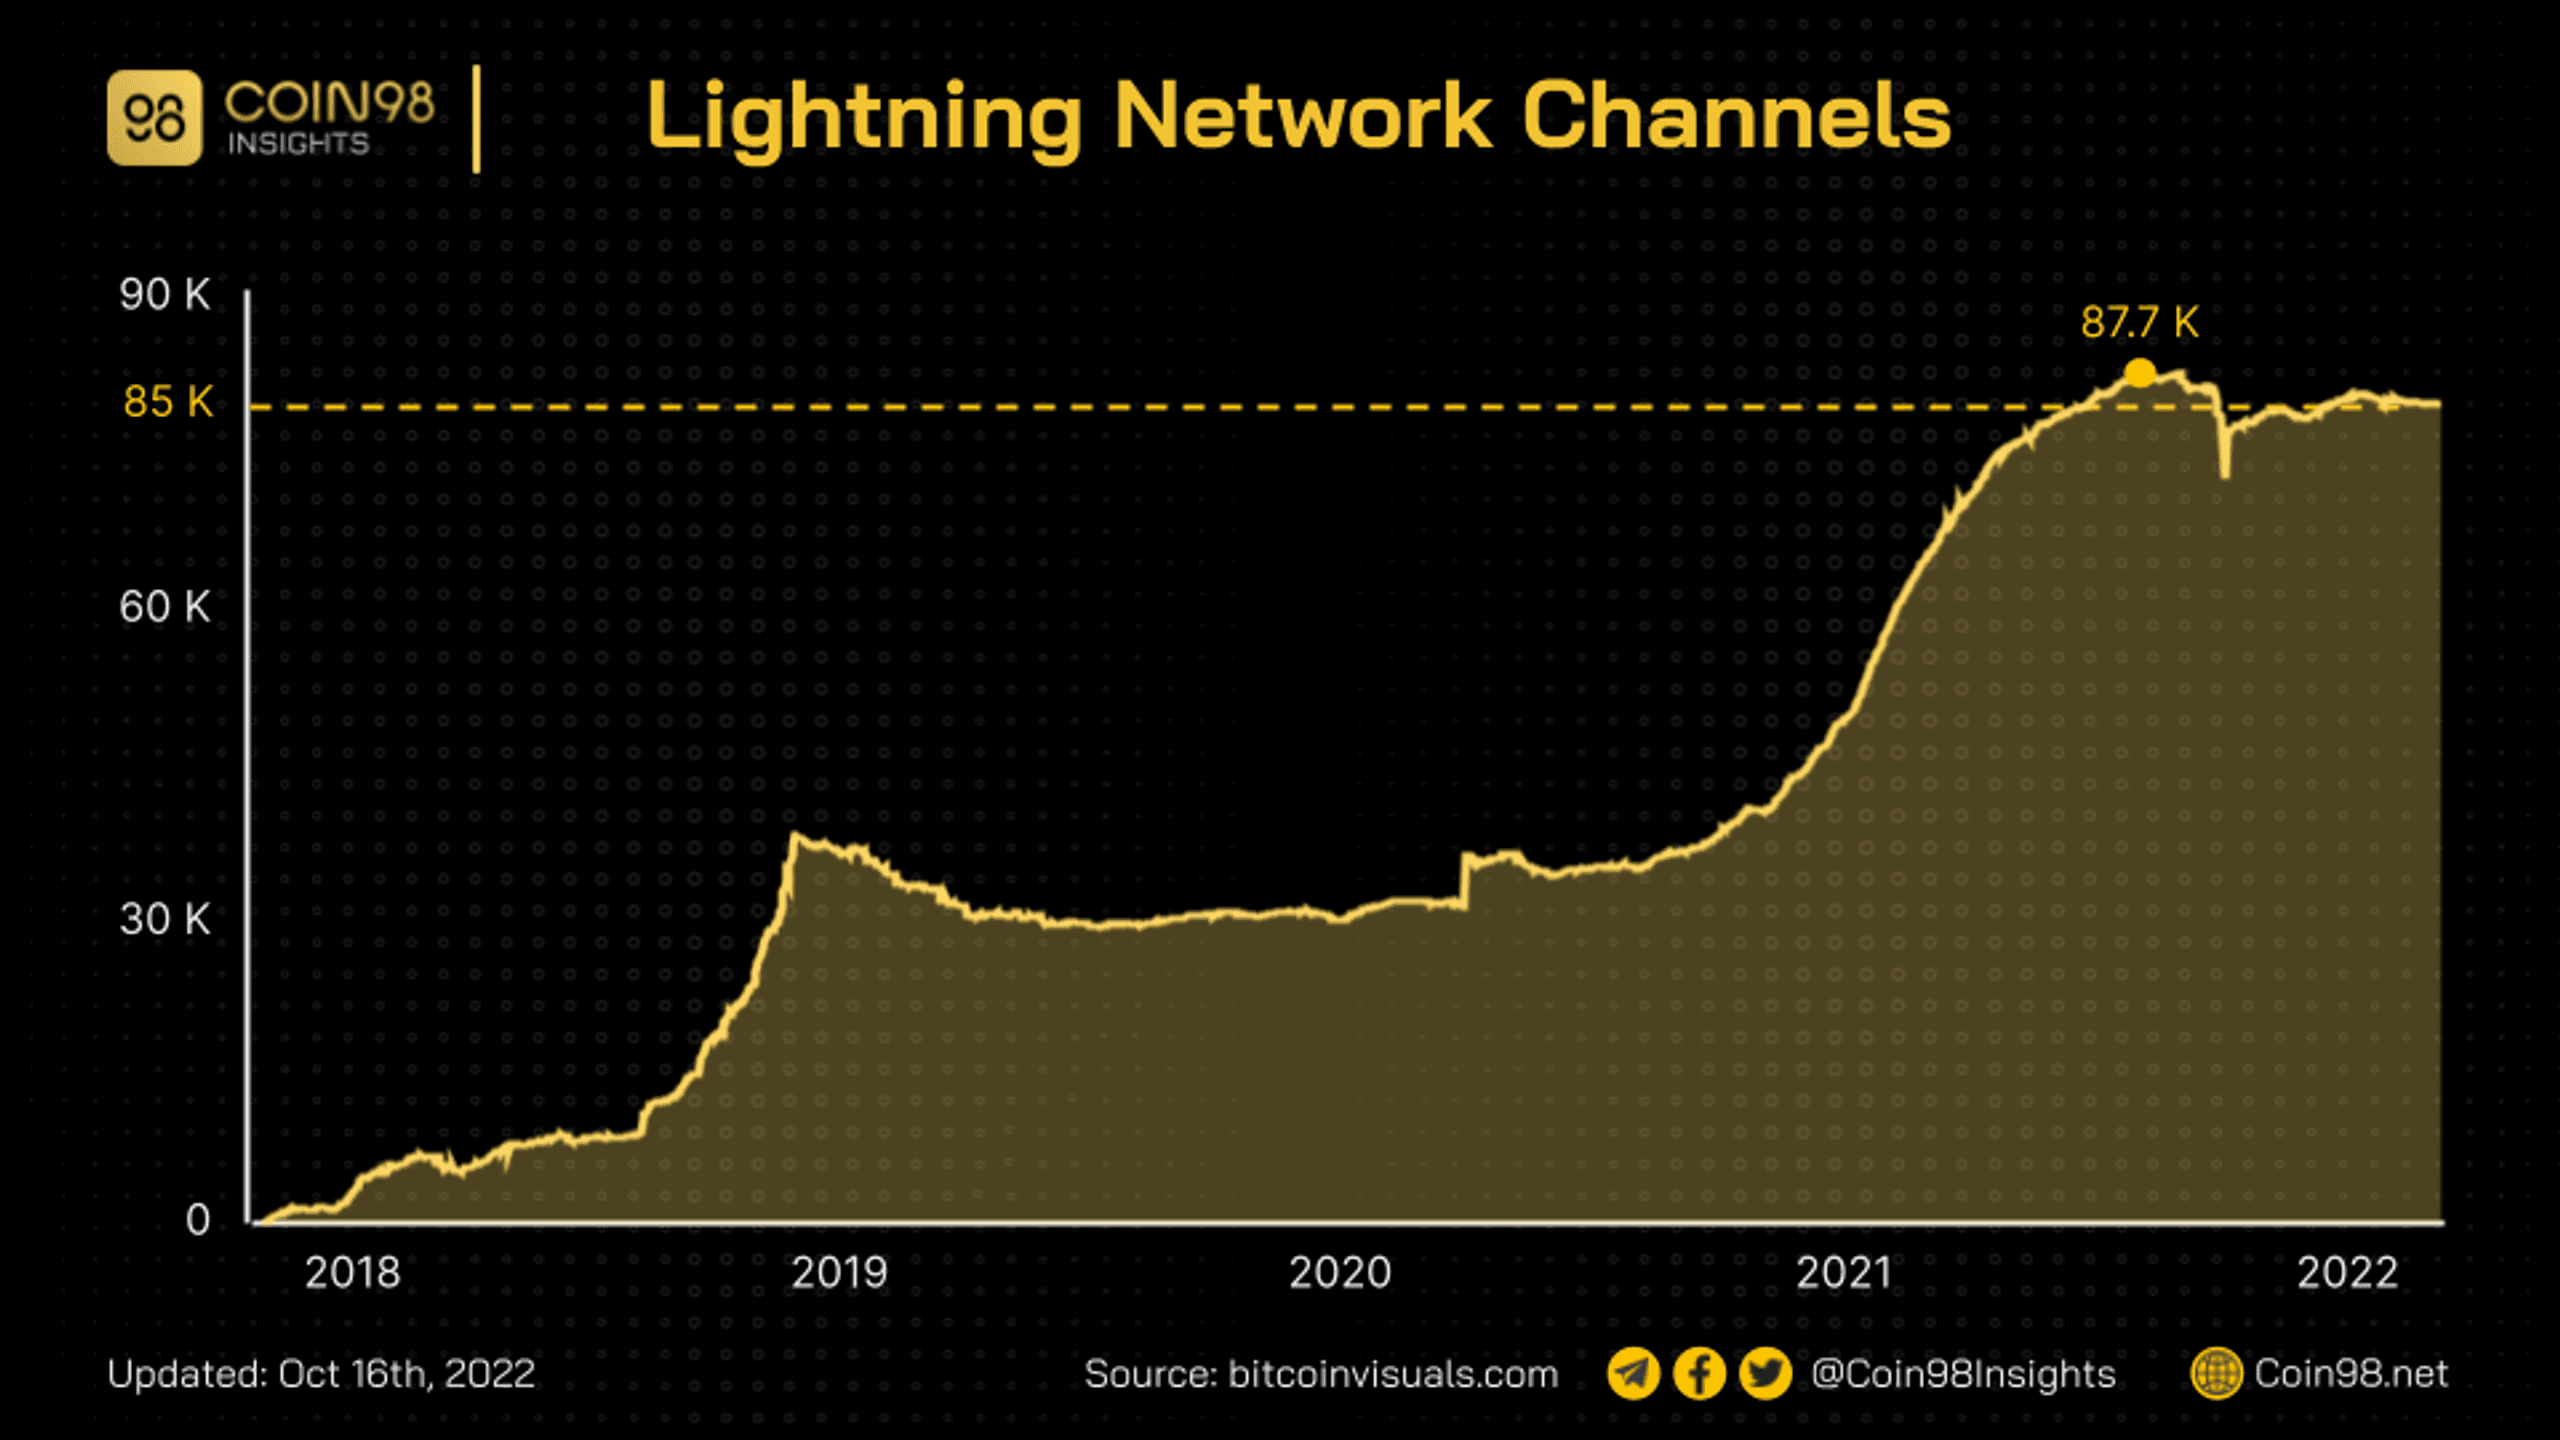 lightning network